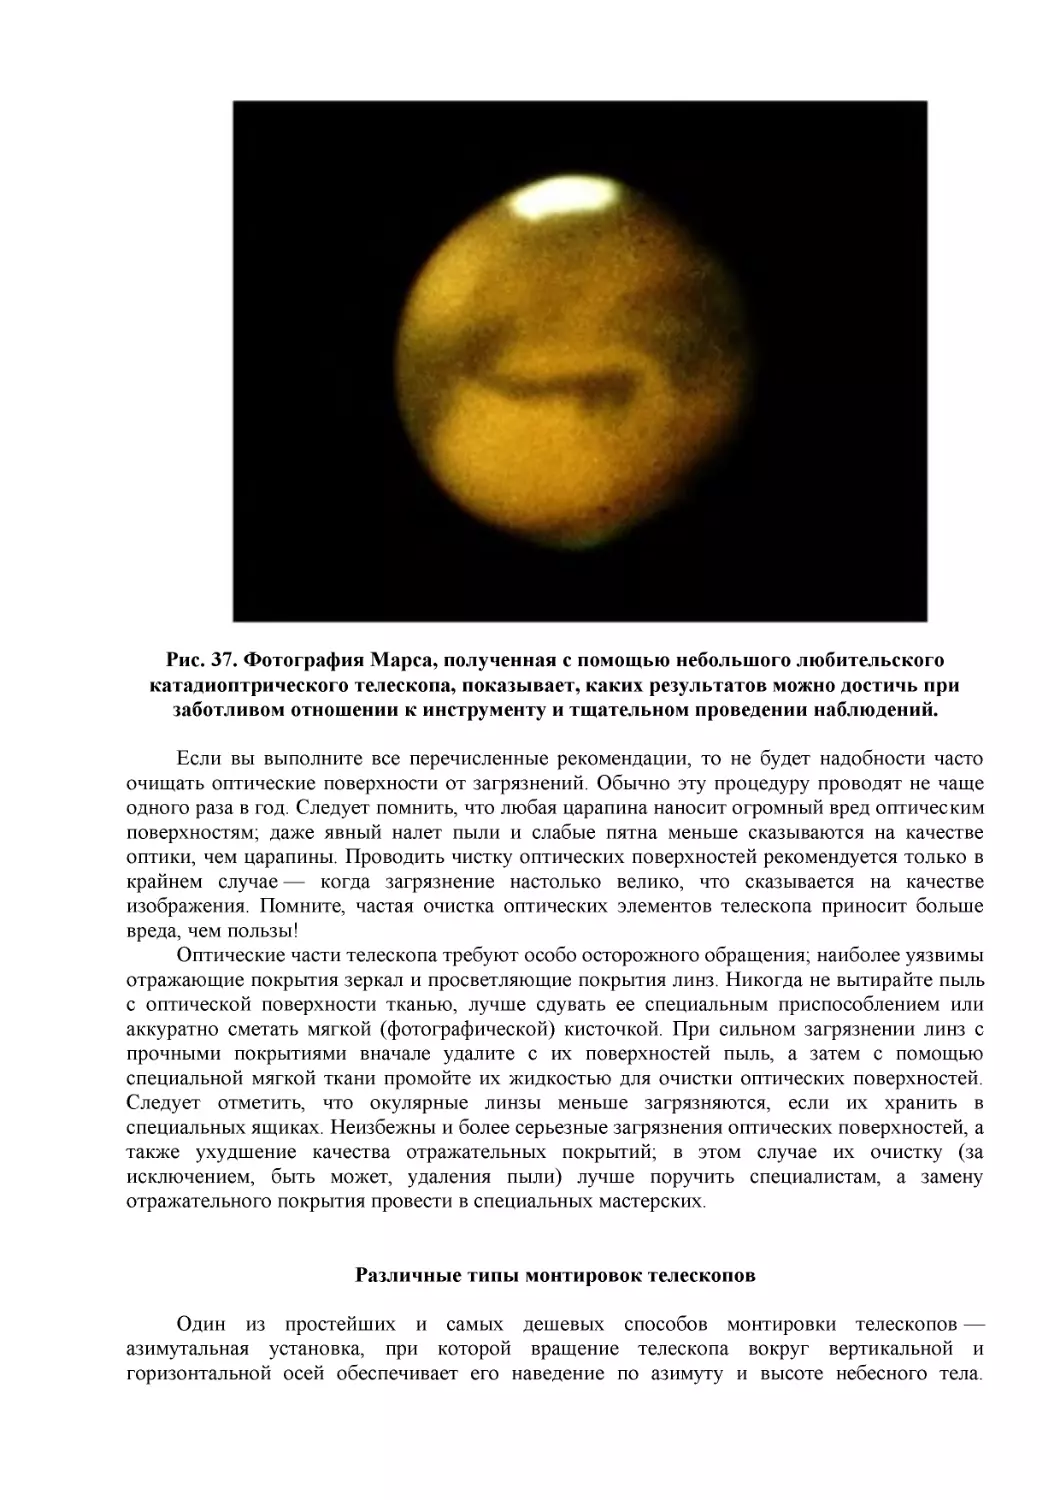 Рис. 37. Фотография Марса, полученная с помощью небольшого любительского катадиоптрического телескопа, показывает, каких результатов можно достичь при заботливом отношении к инструменту и тщательном проведении наблюдений.
Различные типы монтировок телескопов